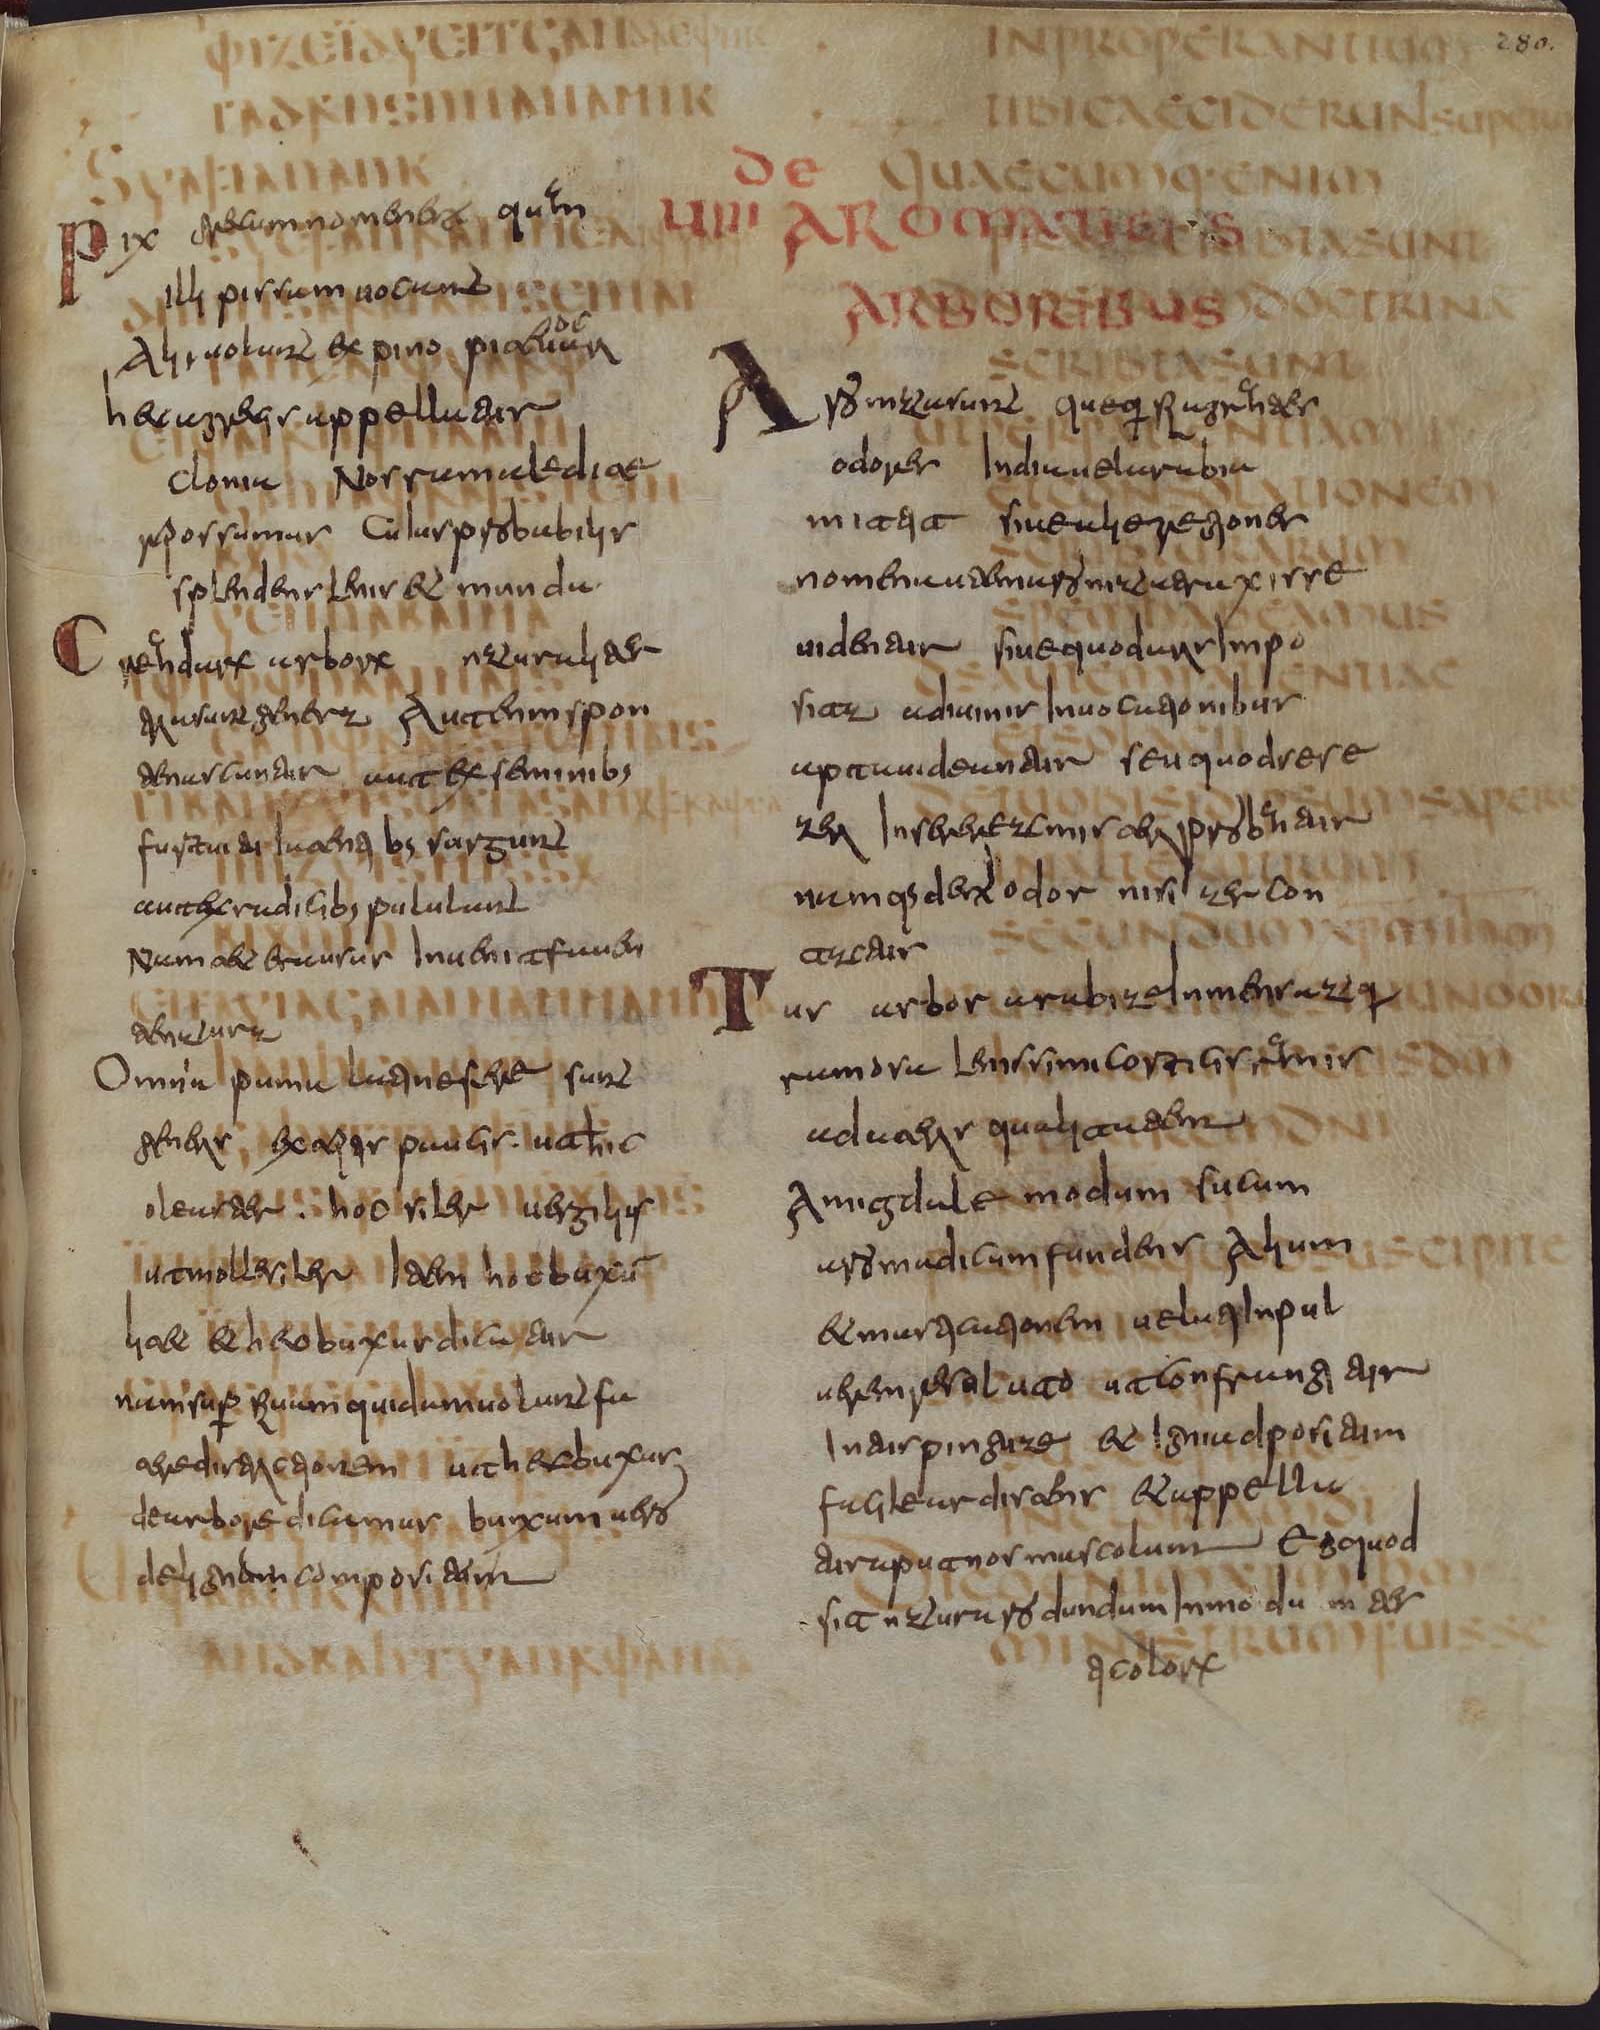 Codex Carolinus